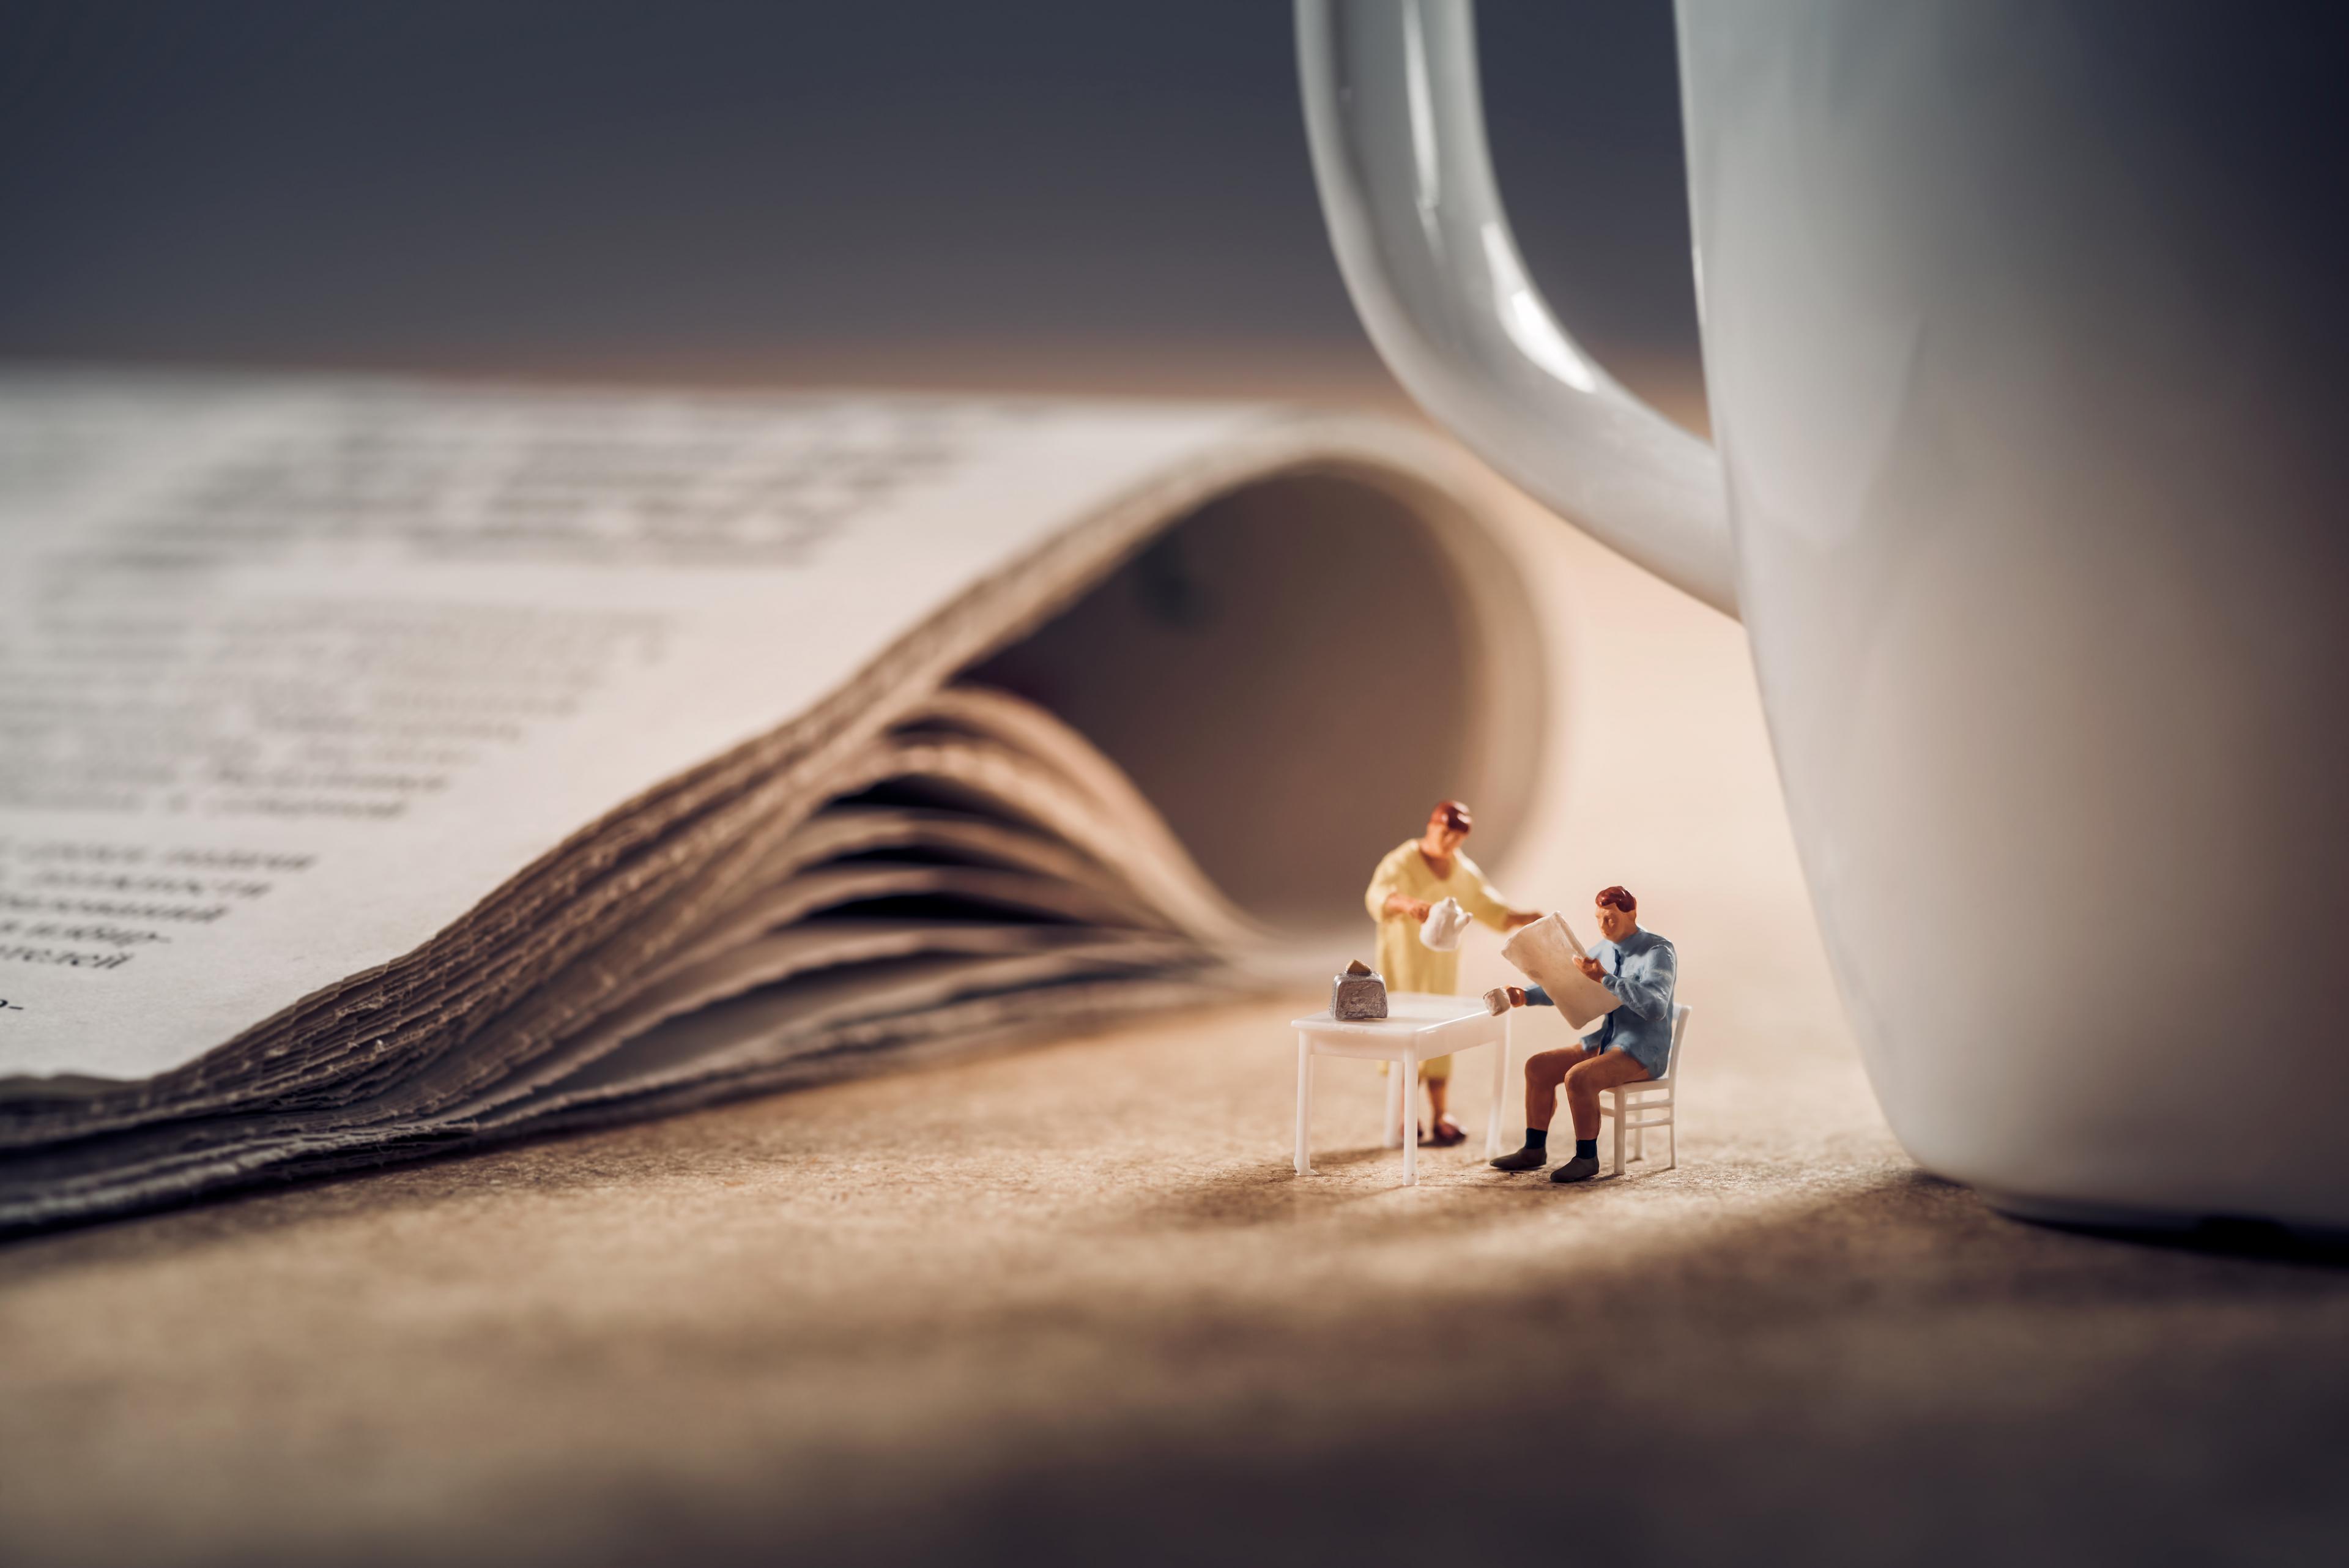 Kleine mensjes bij een krant en een kop koffie